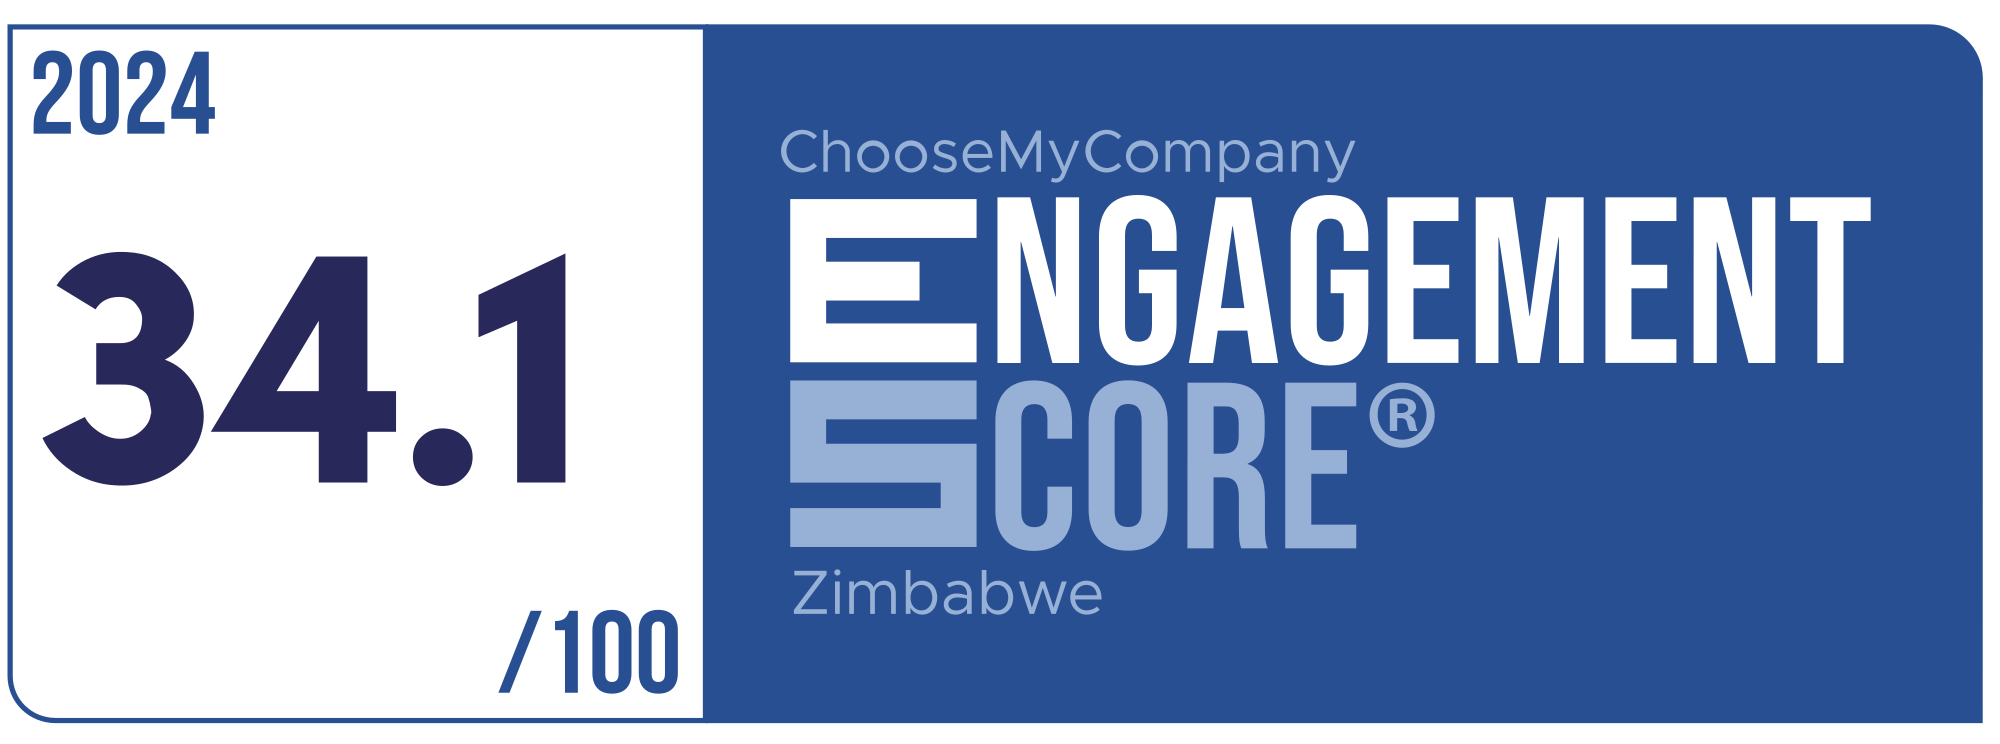 Label Engagement Score 2024 Zimbabwe